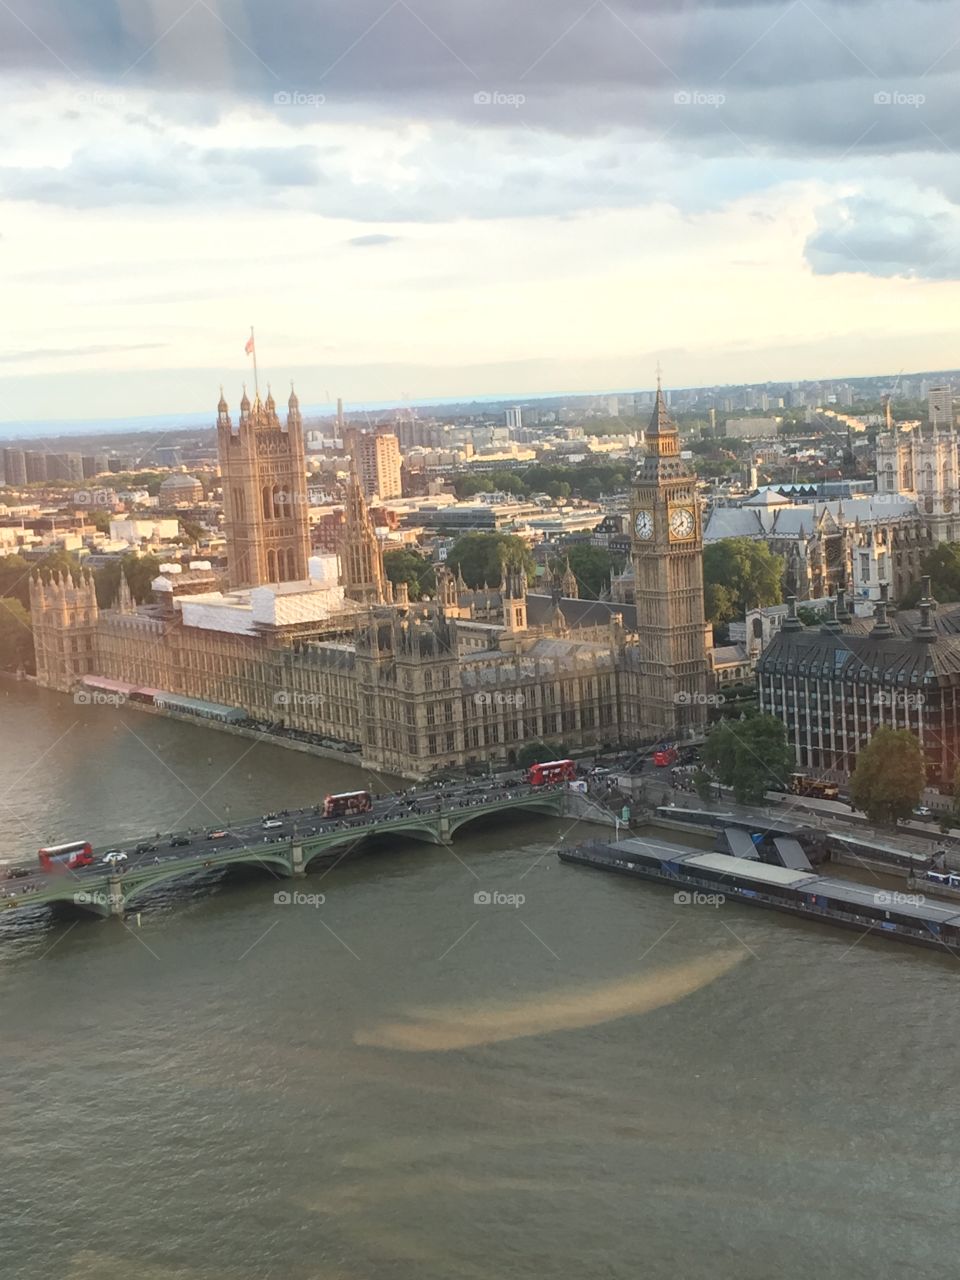 London eye view